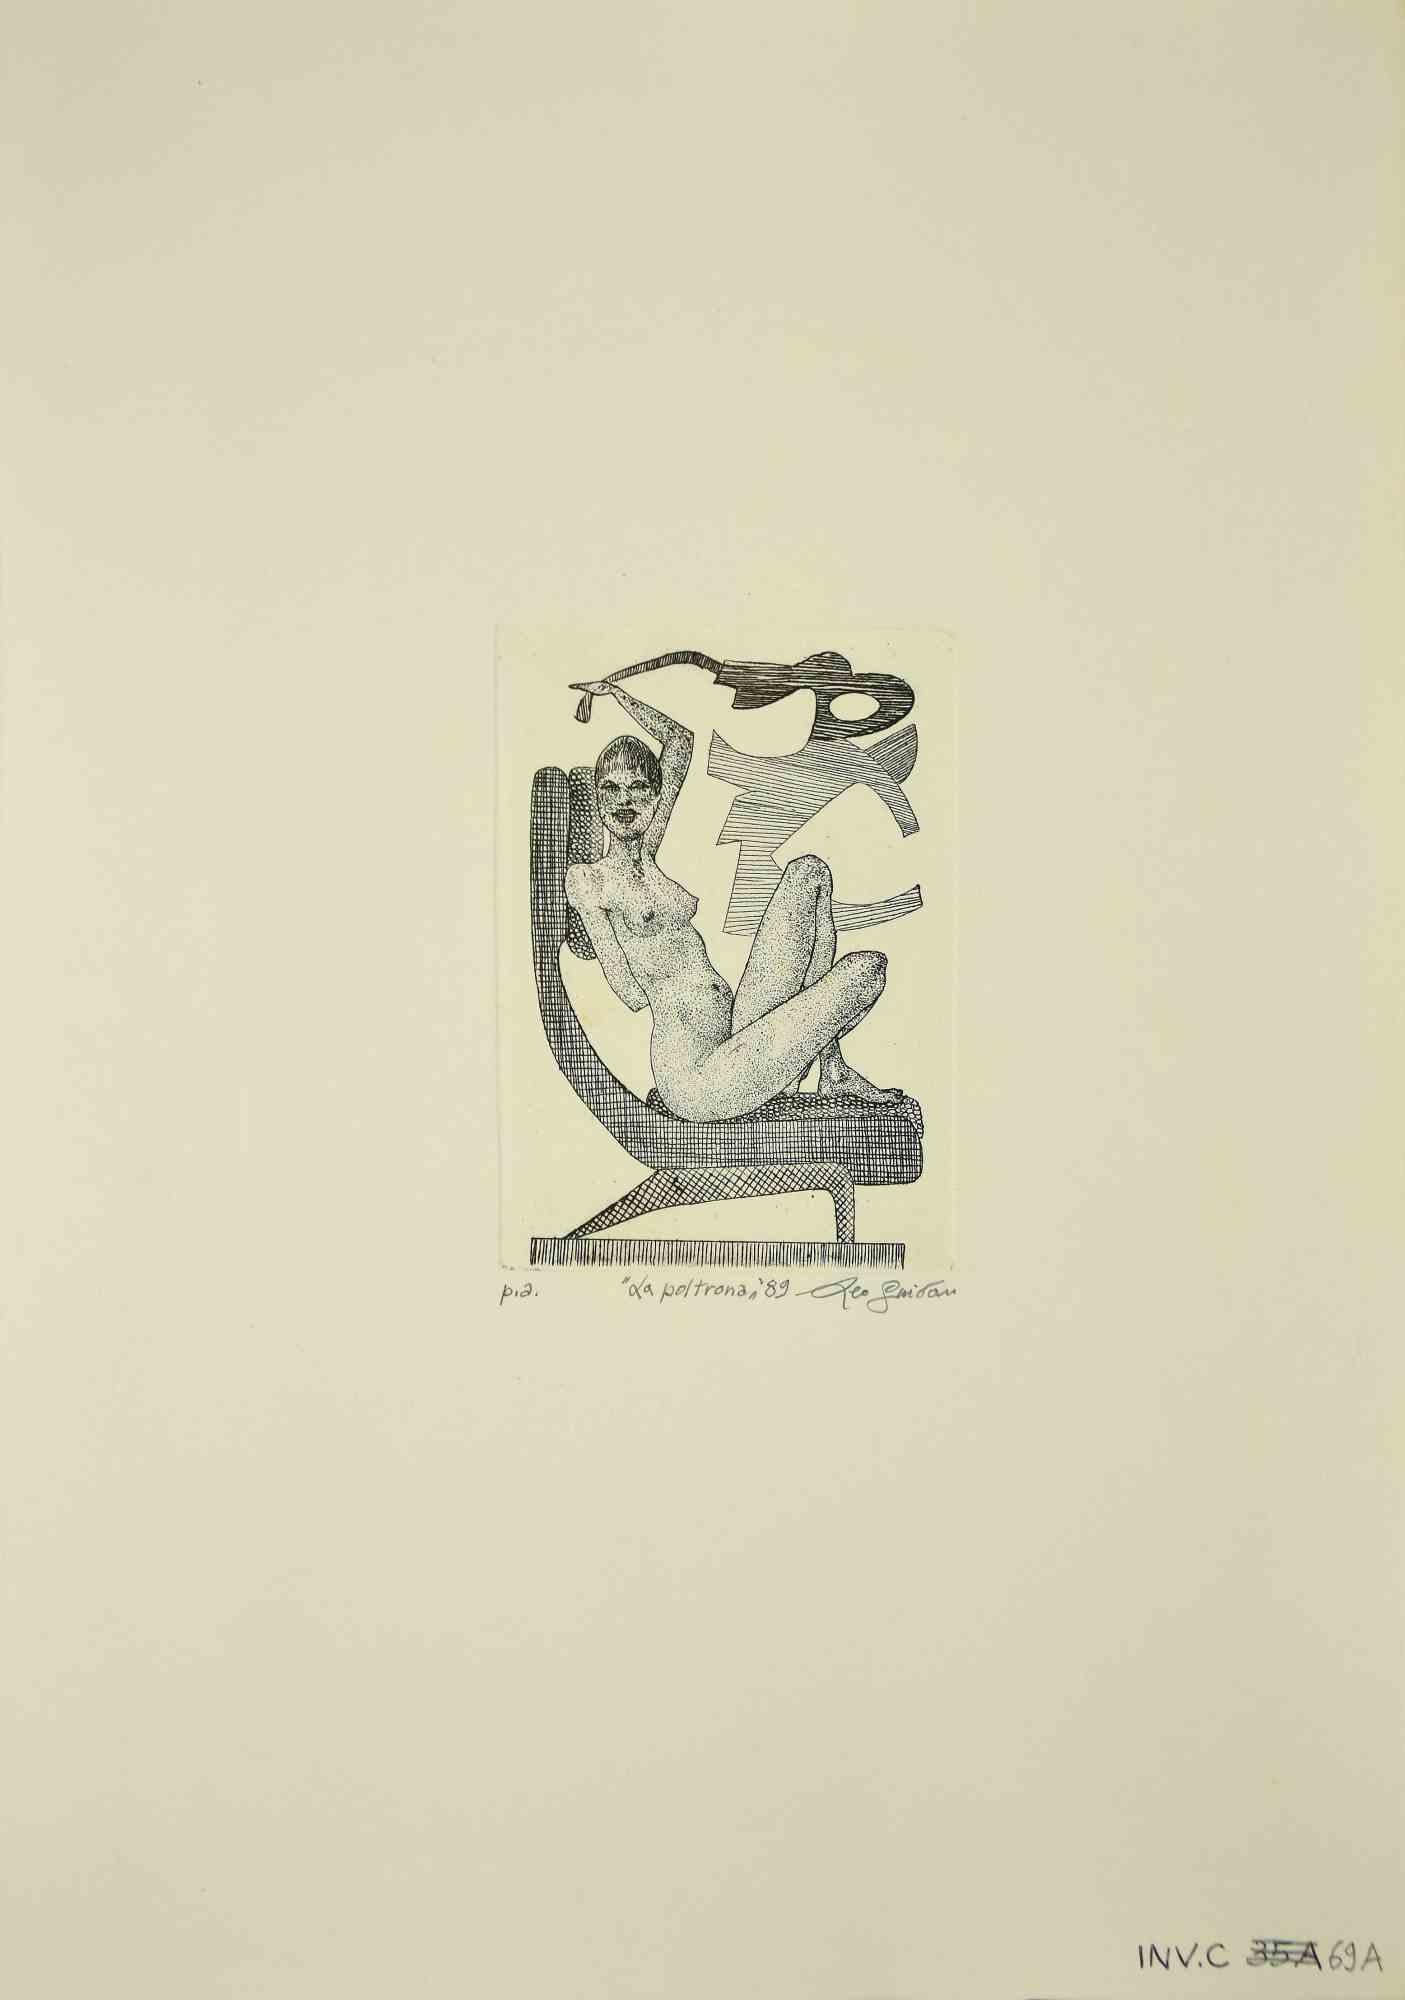 Der Sessel ist ein Originalkunstwerk aus dem Jahr 1989  von dem italienischen zeitgenössischen Künstler  Leo Guida  (1992 - 2017).

Original-Radierung auf elfenbeinfarbenem Papier.

Rechts unten mit Bleistift handsigniert.

Probedruck des Künstlers,